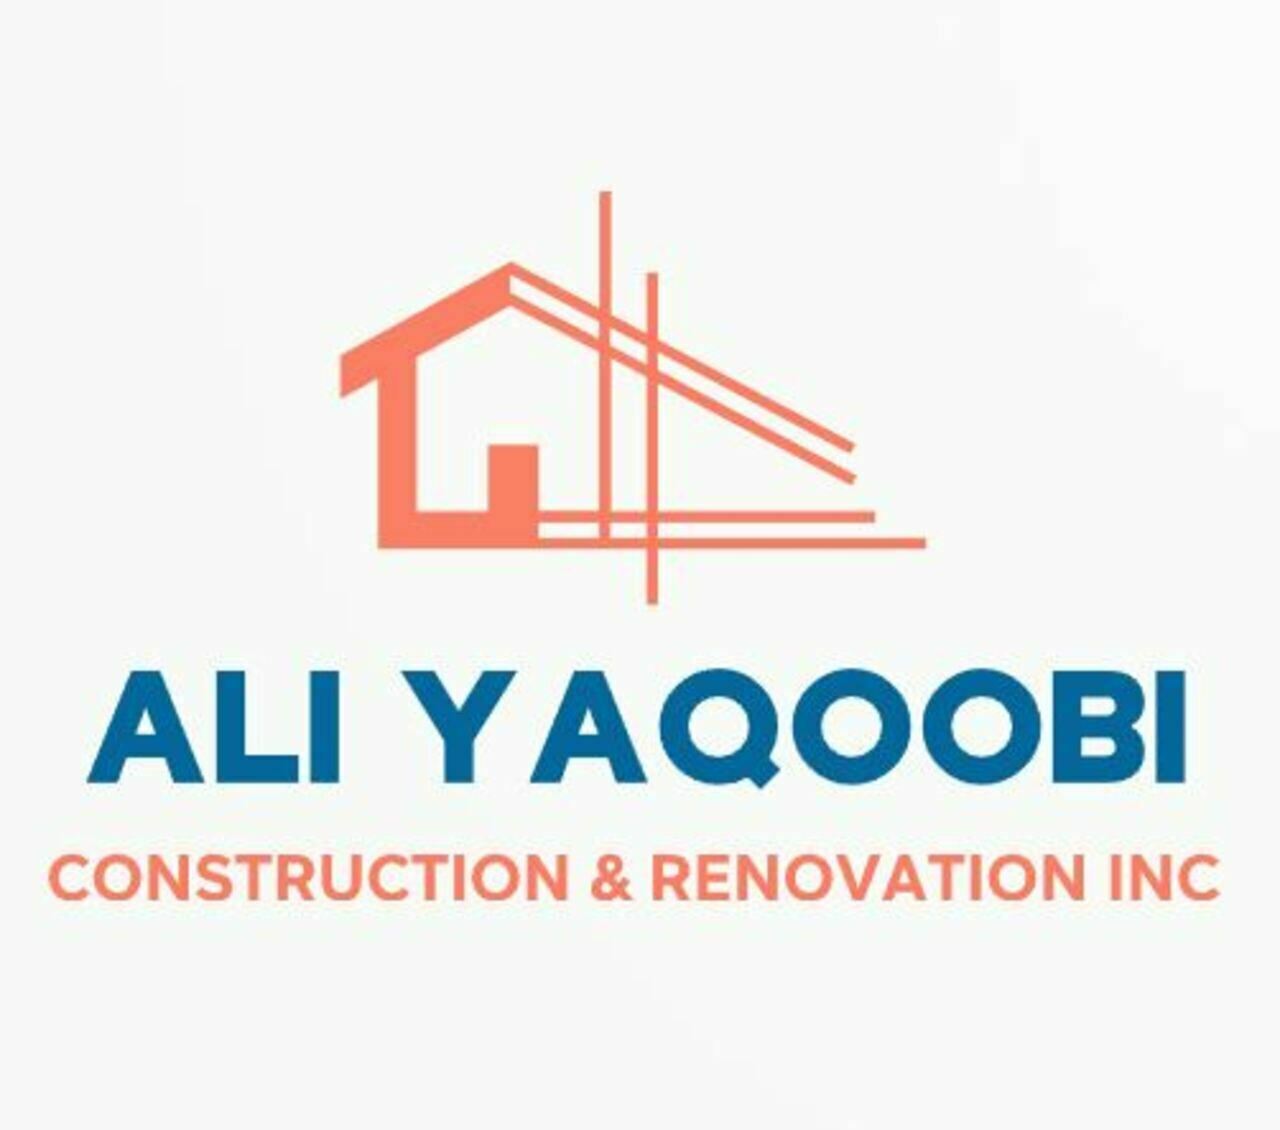 Ali Yaqoobi Construction & Renovation Inc's logo